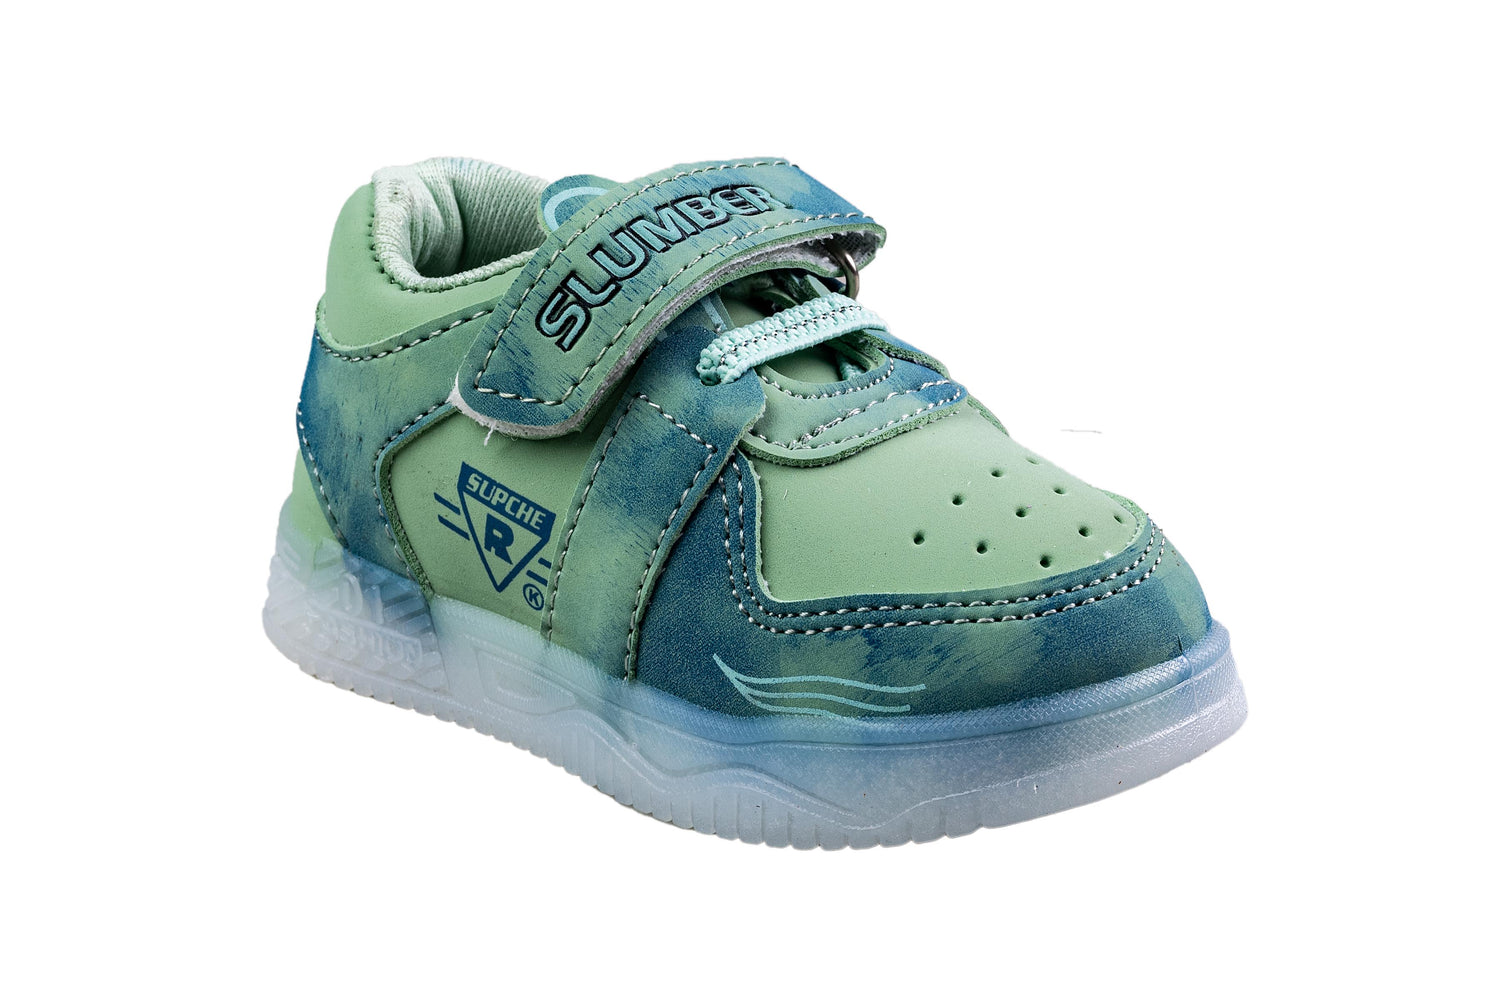 Rouba Children Pista Sports Shoe